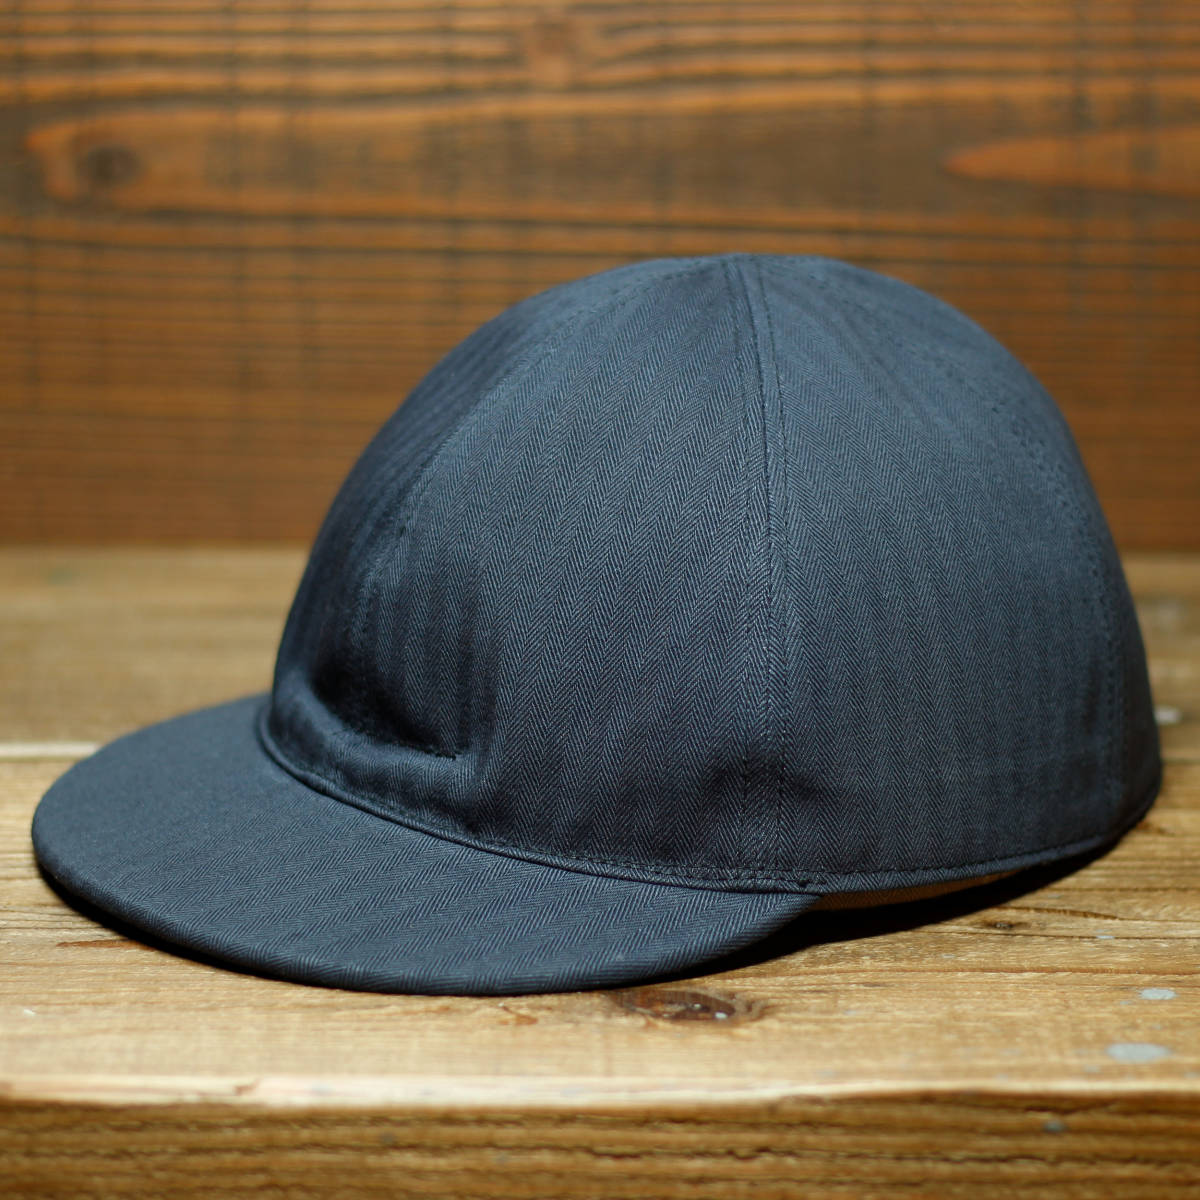 ハンドメイド US NAVY N-3 Type Cap USN キャップ 帽子 HBT ヘリンボーン ネイビー 野球帽 40s 古着 ビンテージ ヴィンテージの画像1